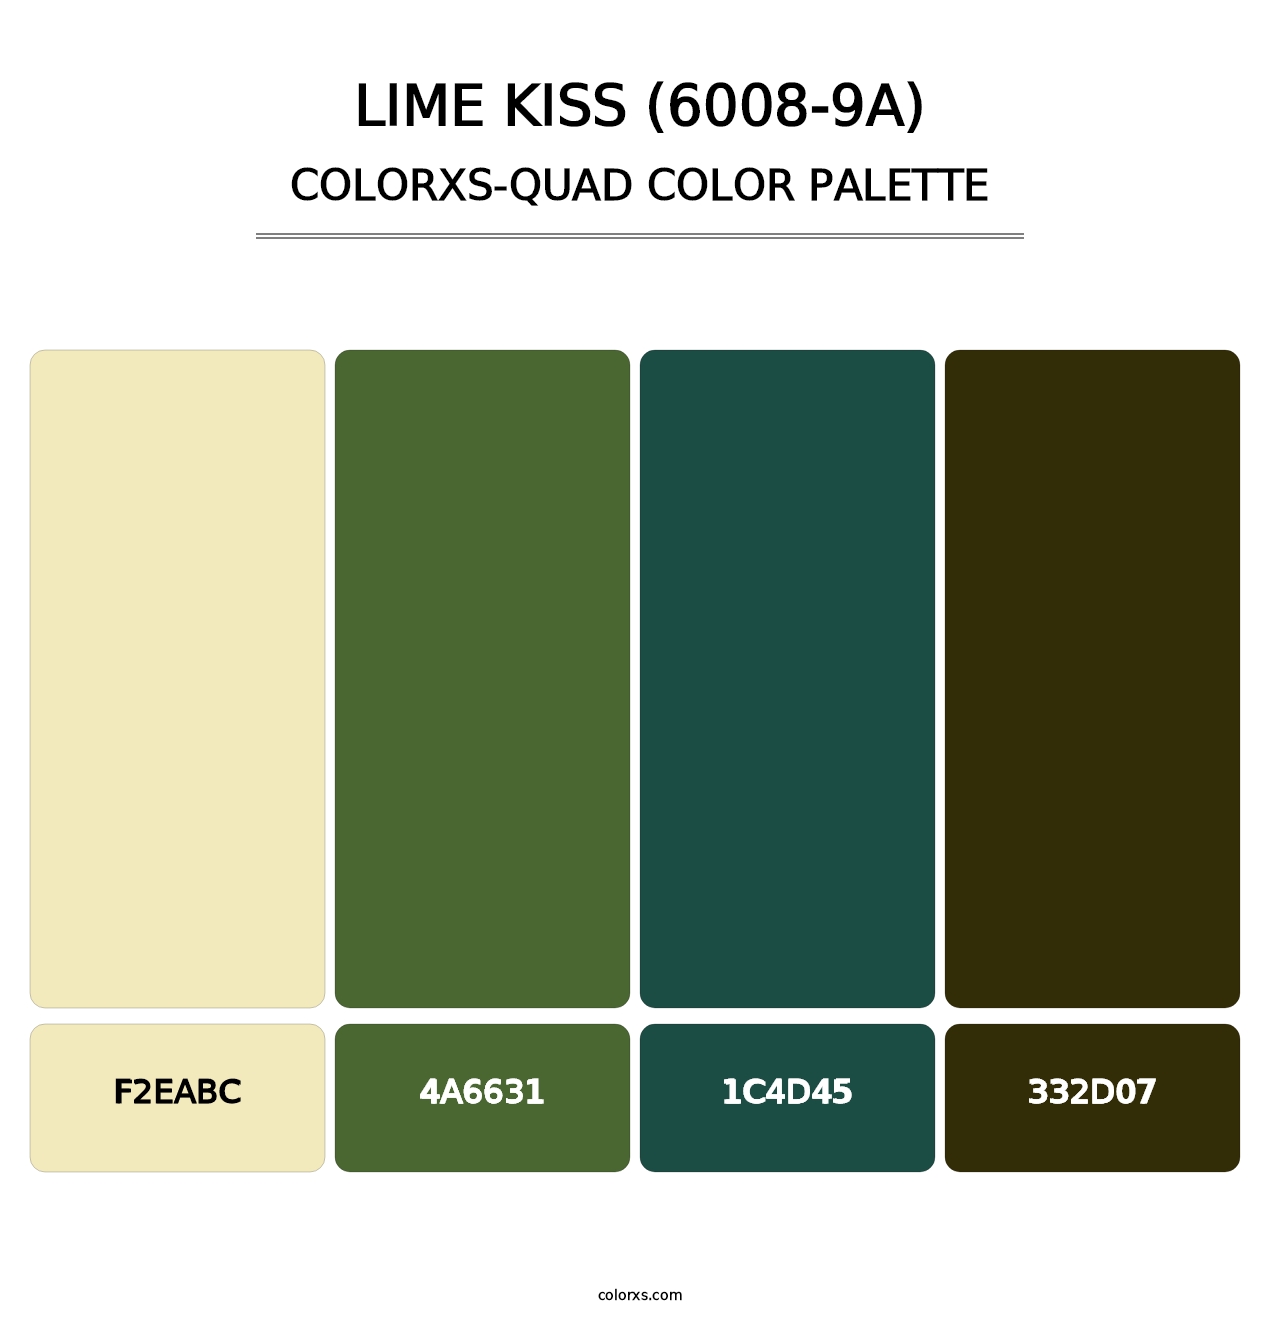 Lime Kiss (6008-9A) - Colorxs Quad Palette